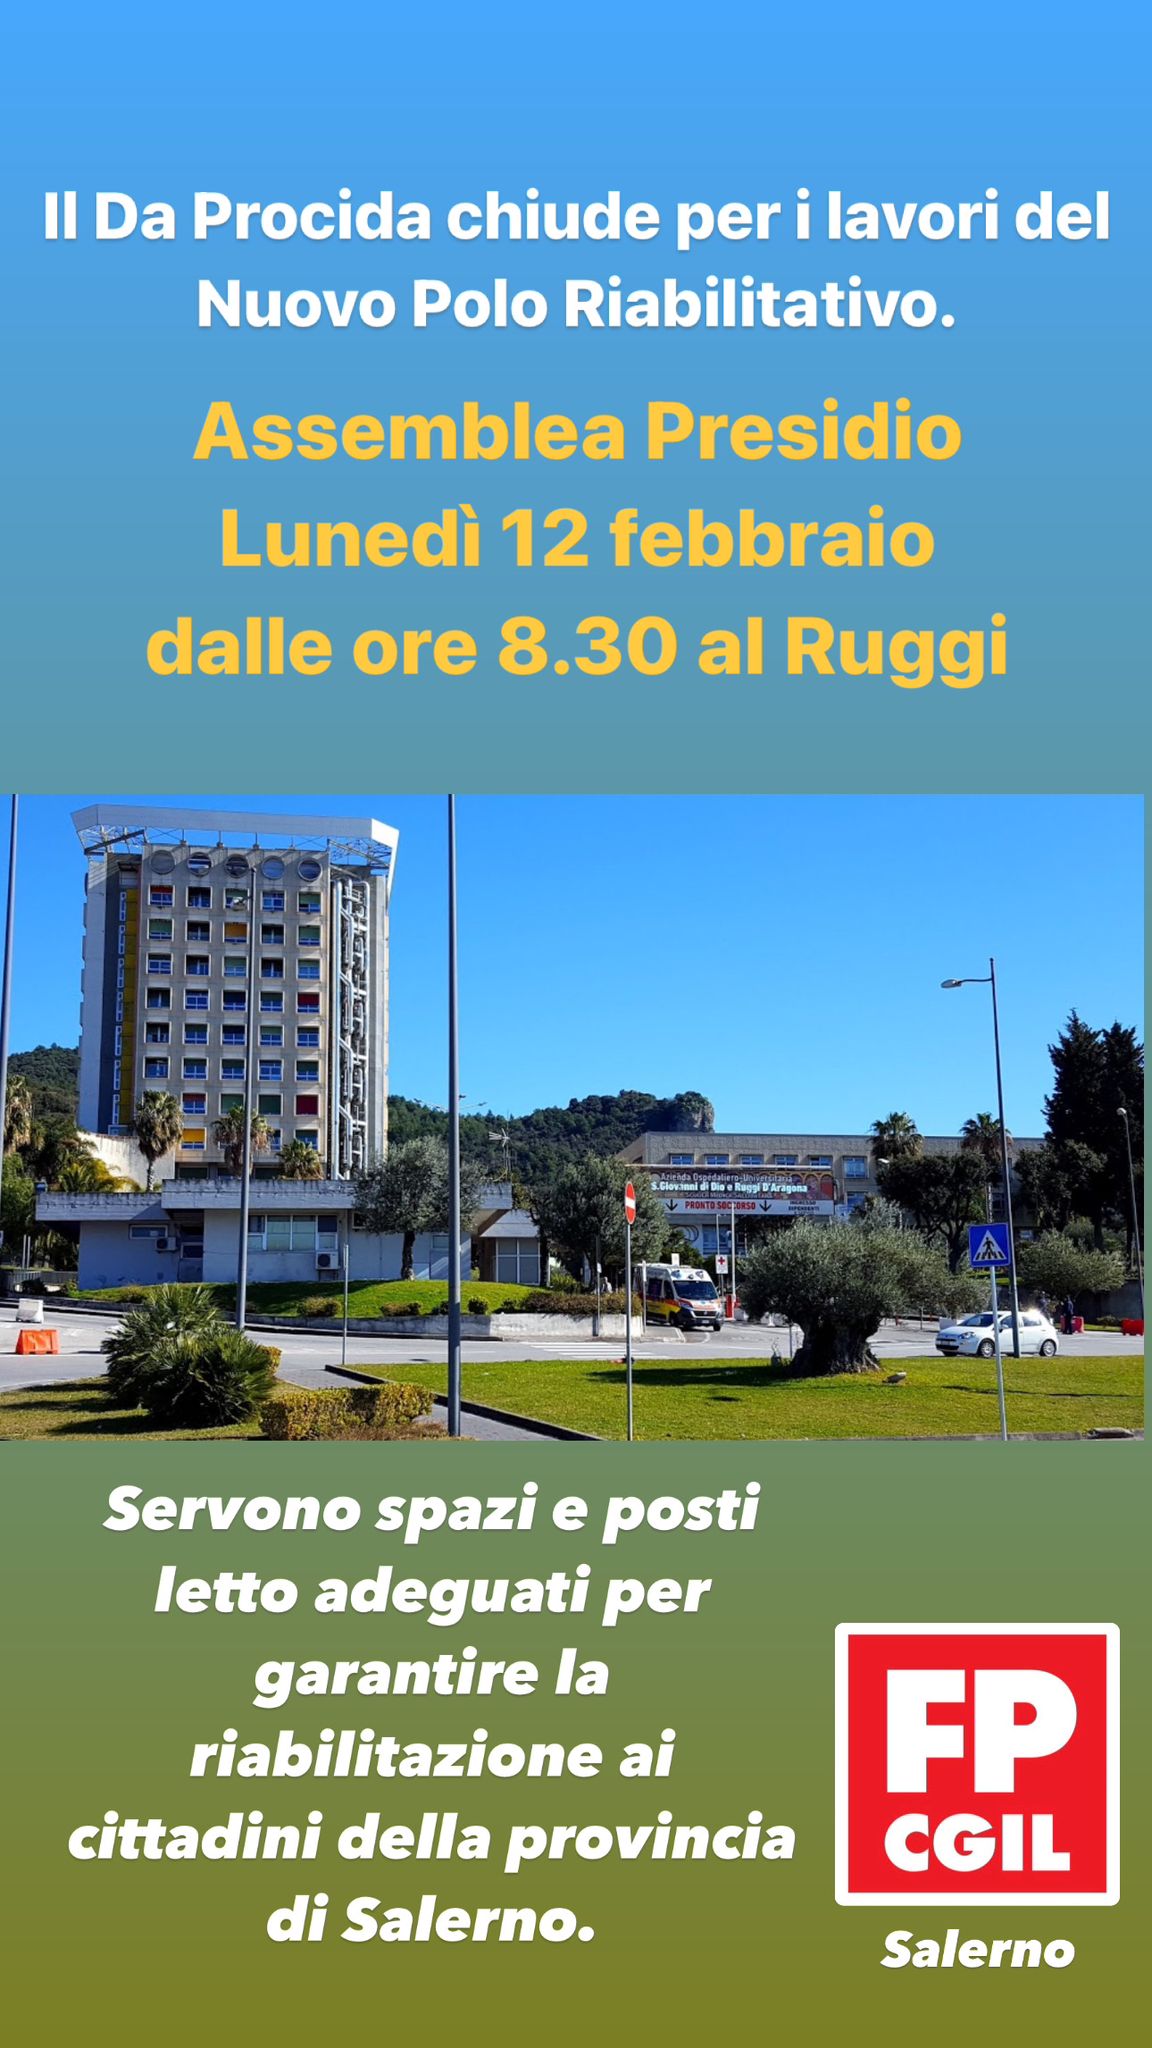 Salerno: Ospedale, FP Cgil, Presidio Assemblea presso “Ruggi”